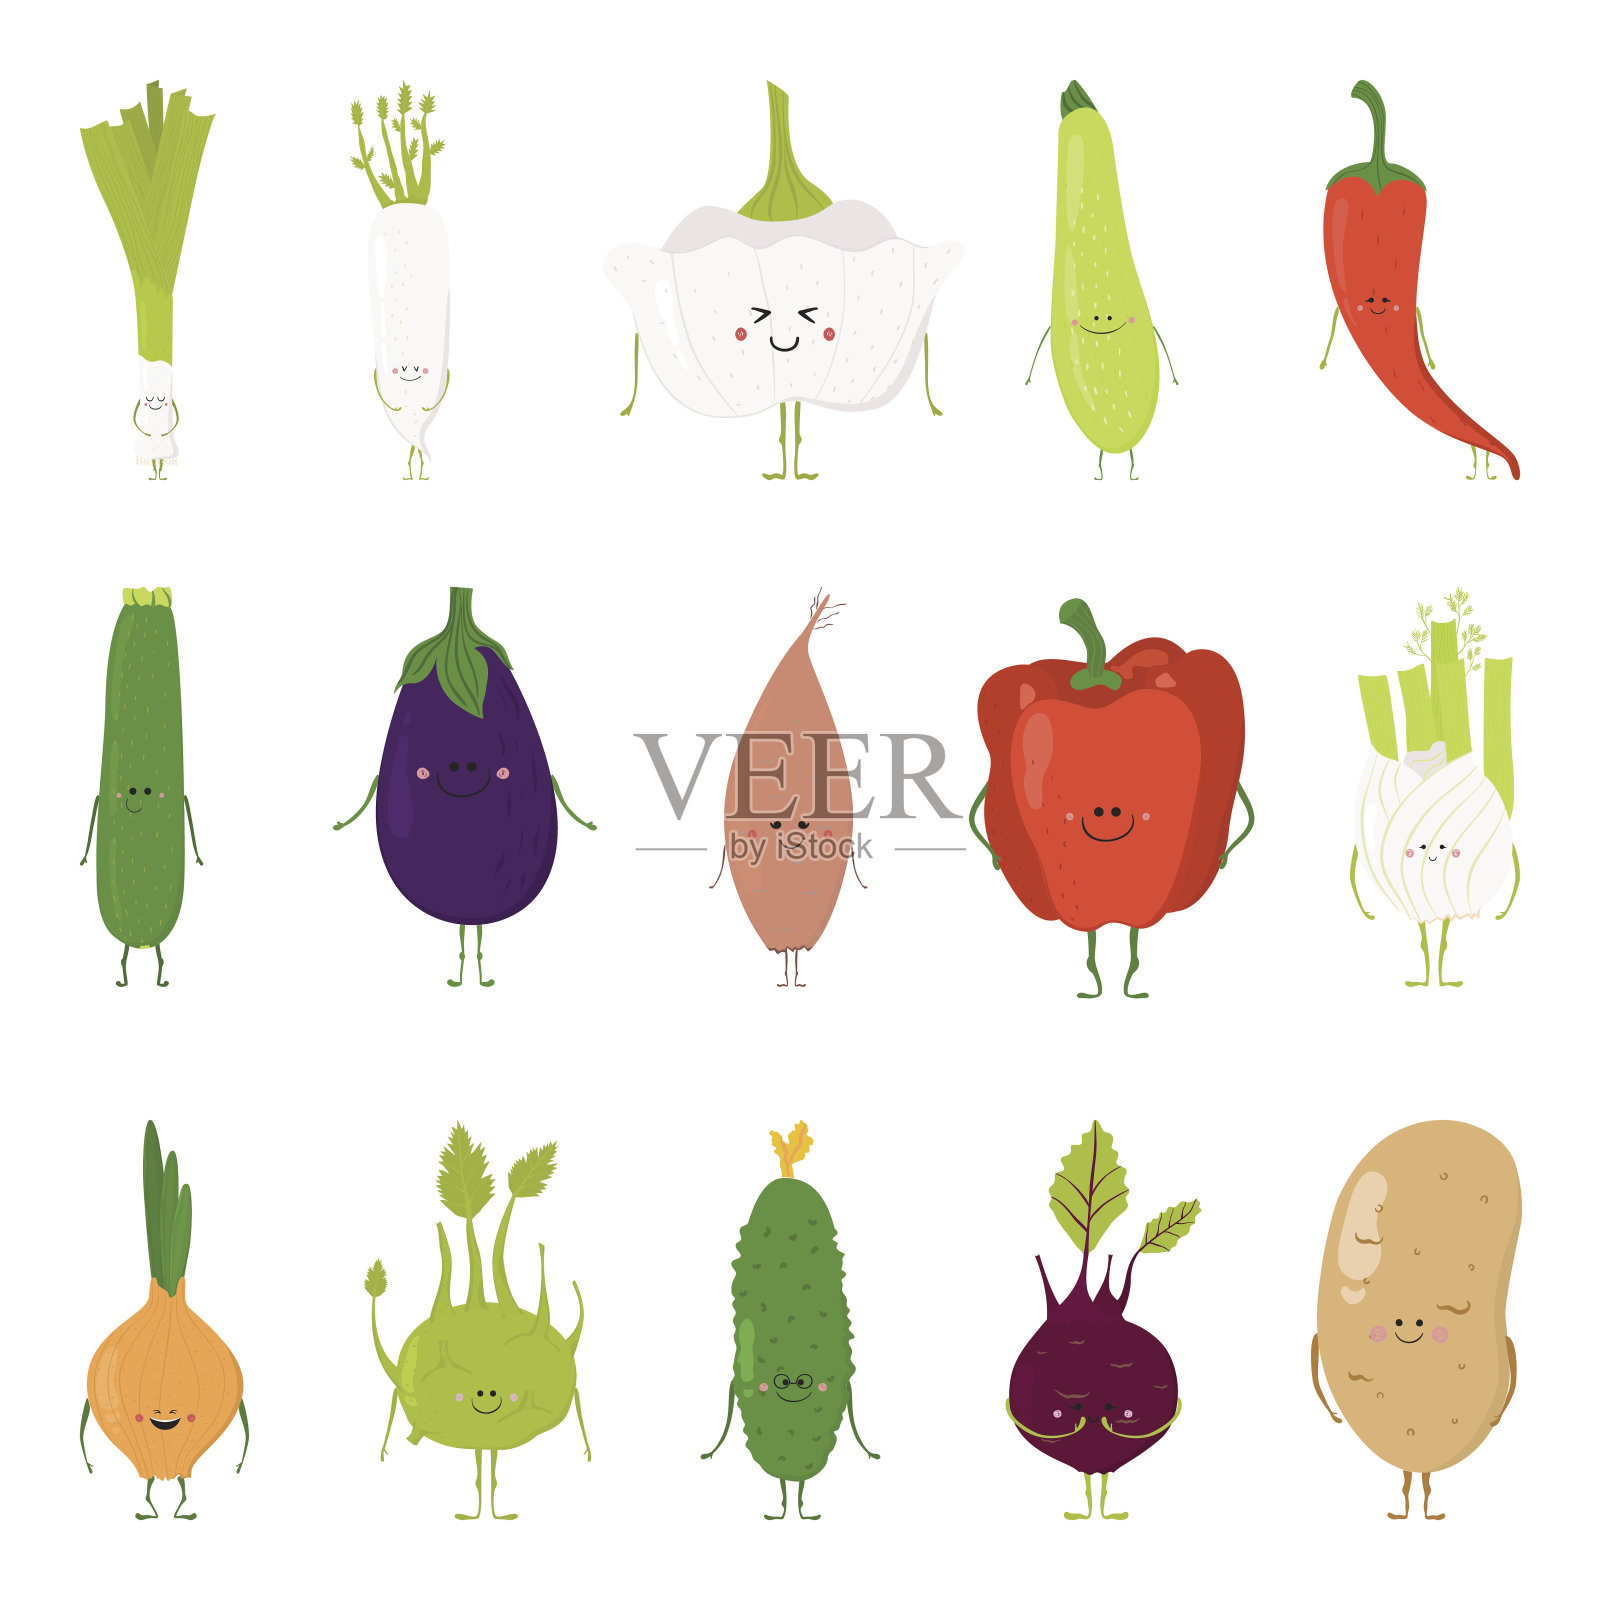 有趣的蔬菜卡片插画图片素材